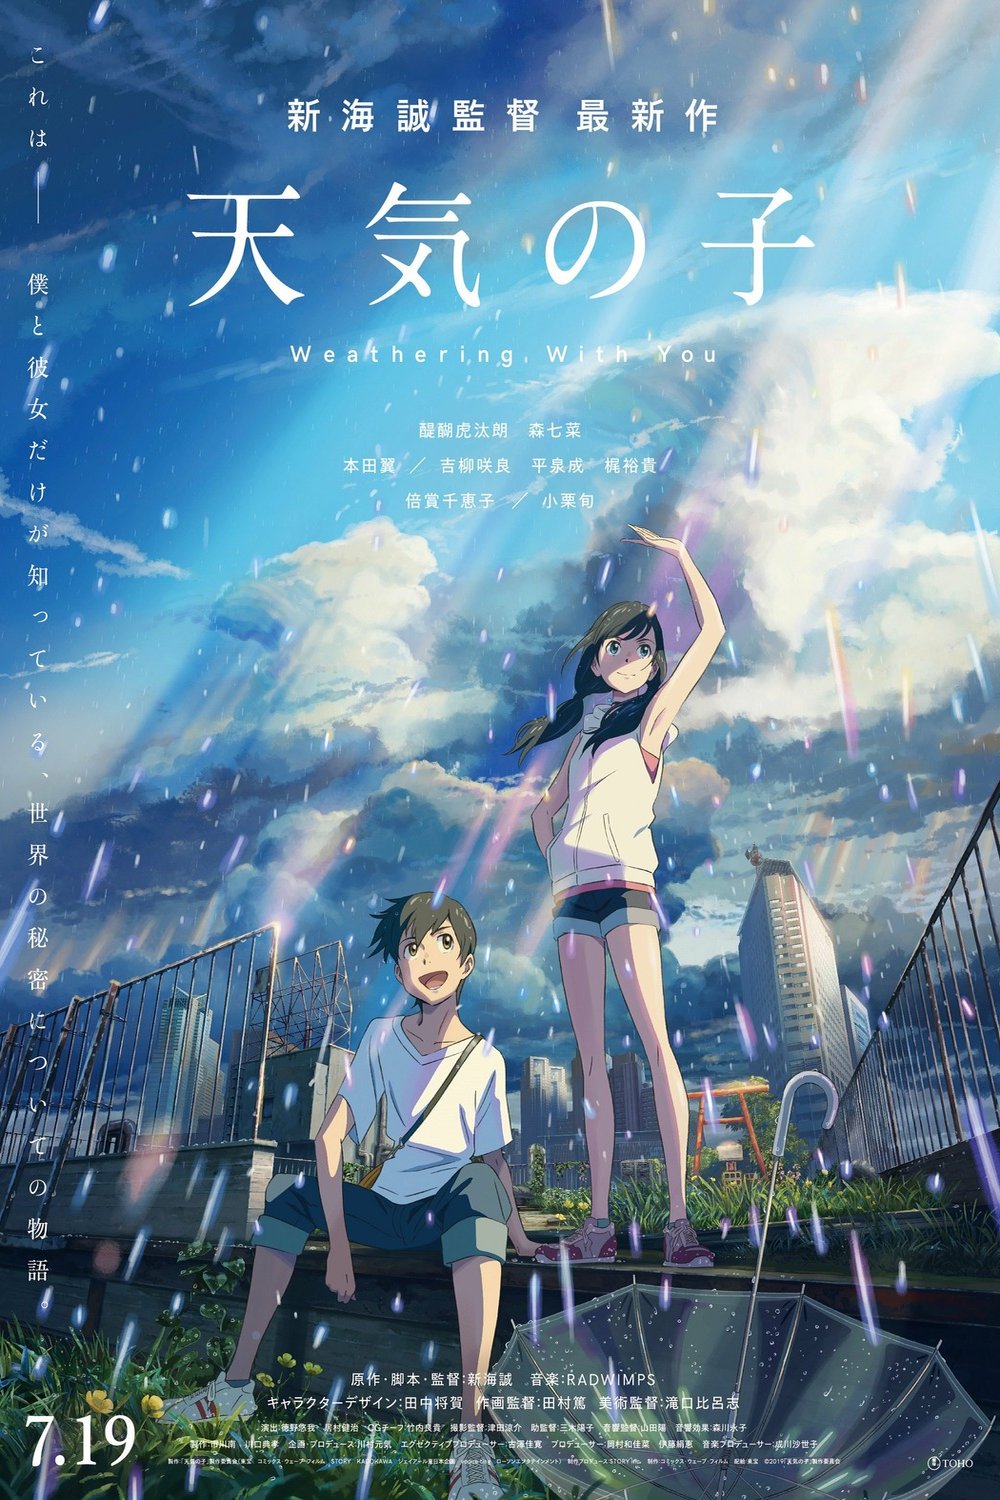 L'affiche originale du film Tenki no ko en japonais